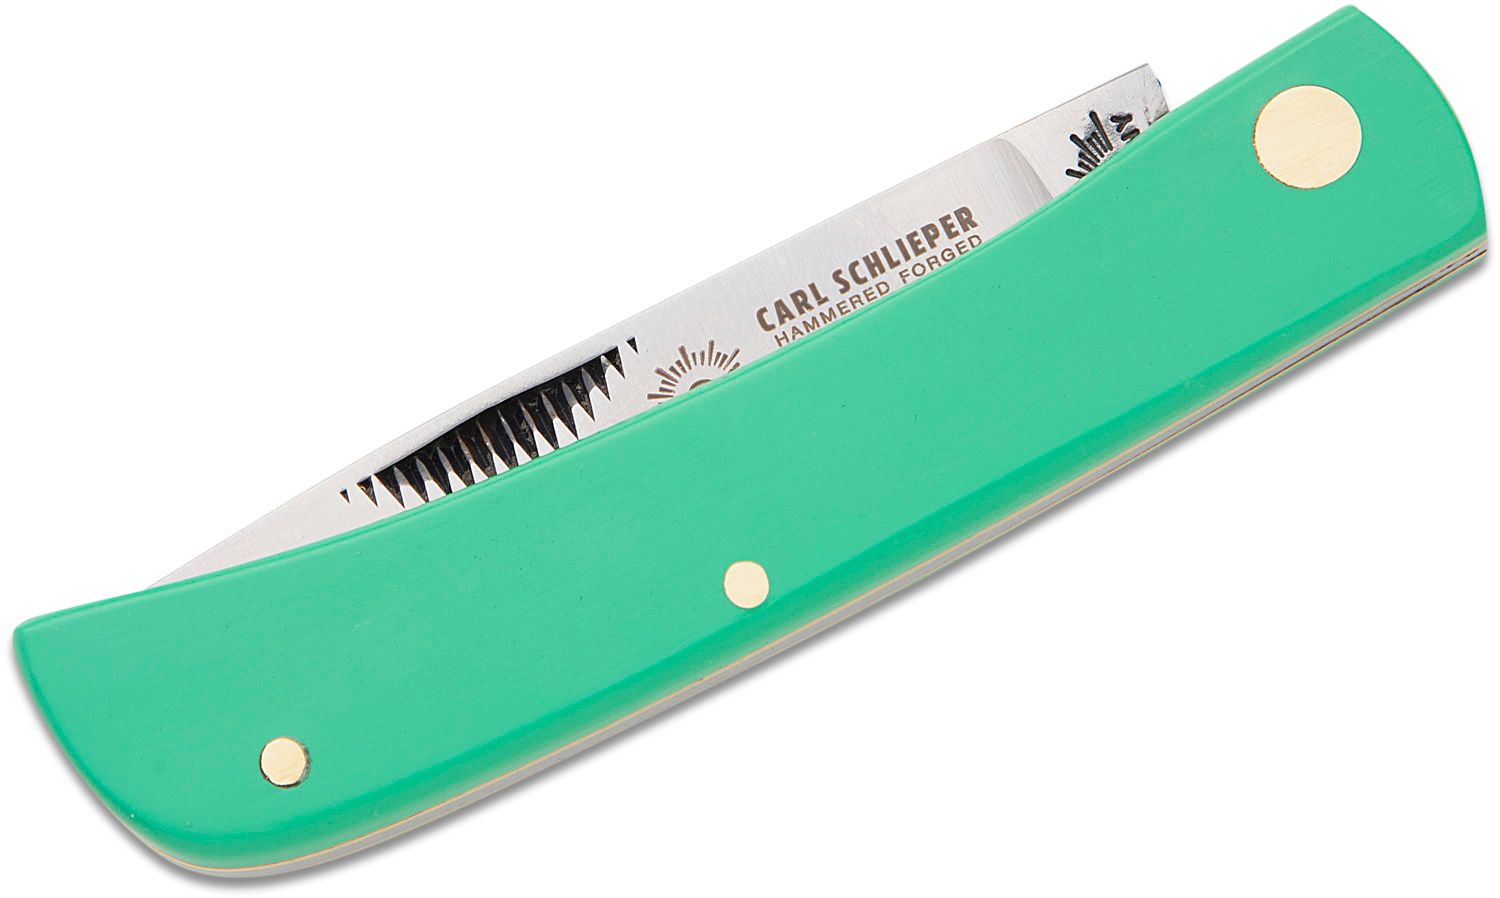 German Eye Brand Carl Schlieper Clodbuster Jr. Folding Knife 2.875 Blade,  Green Celluloid Handles - KnifeCenter - 99JRG